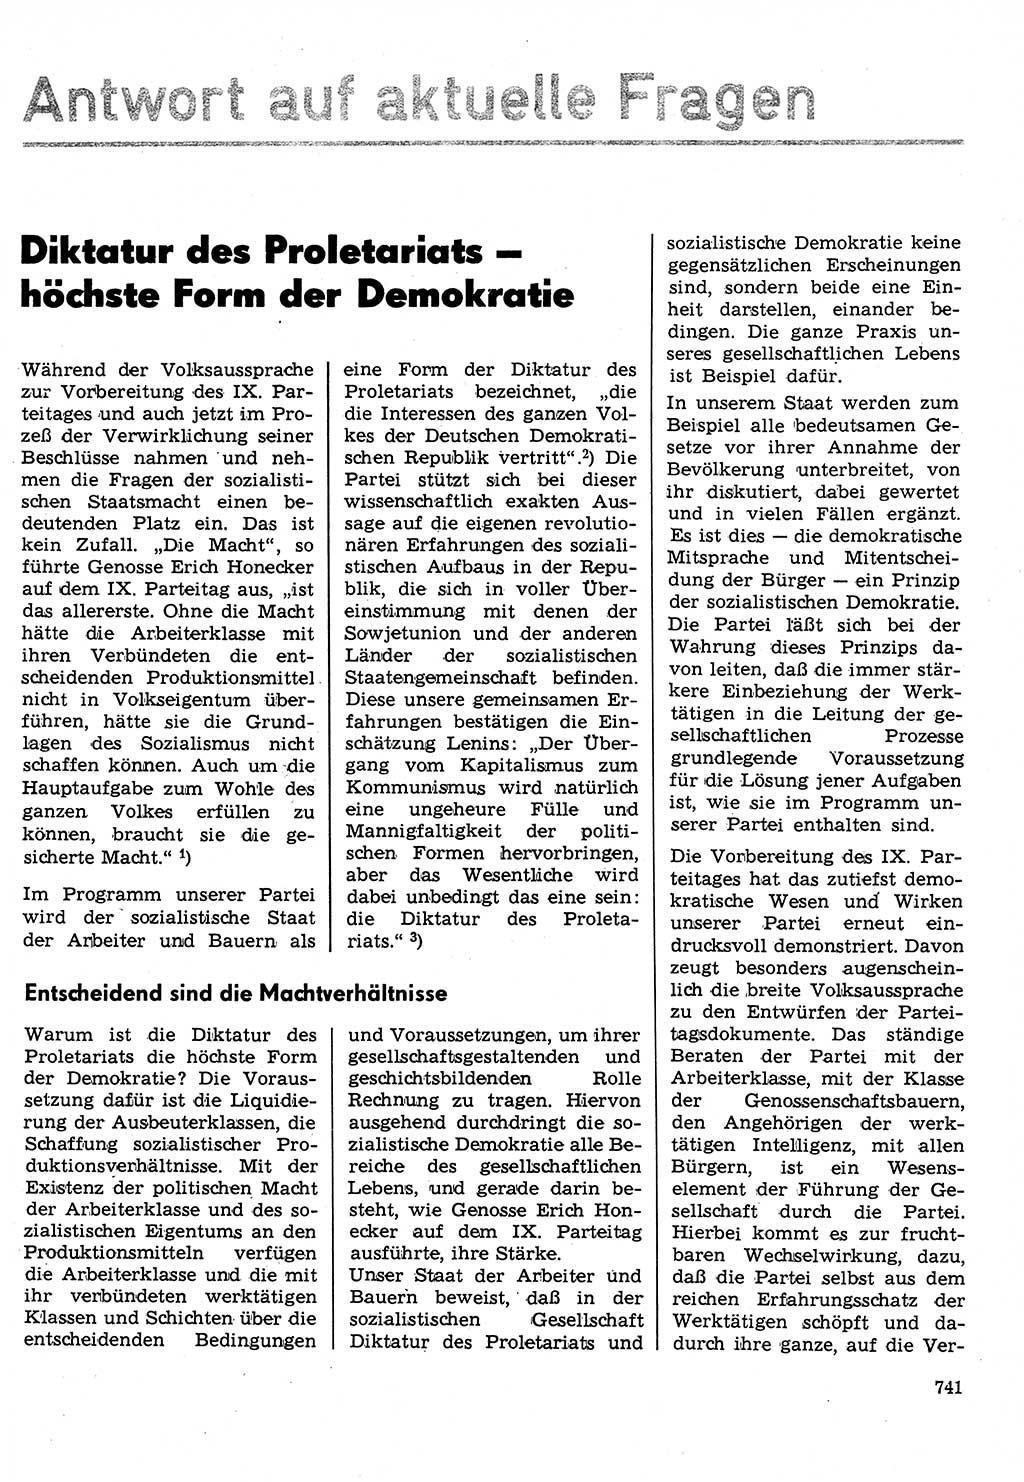 Neuer Weg (NW), Organ des Zentralkomitees (ZK) der SED (Sozialistische Einheitspartei Deutschlands) für Fragen des Parteilebens, 31. Jahrgang [Deutsche Demokratische Republik (DDR)] 1976, Seite 741 (NW ZK SED DDR 1976, S. 741)